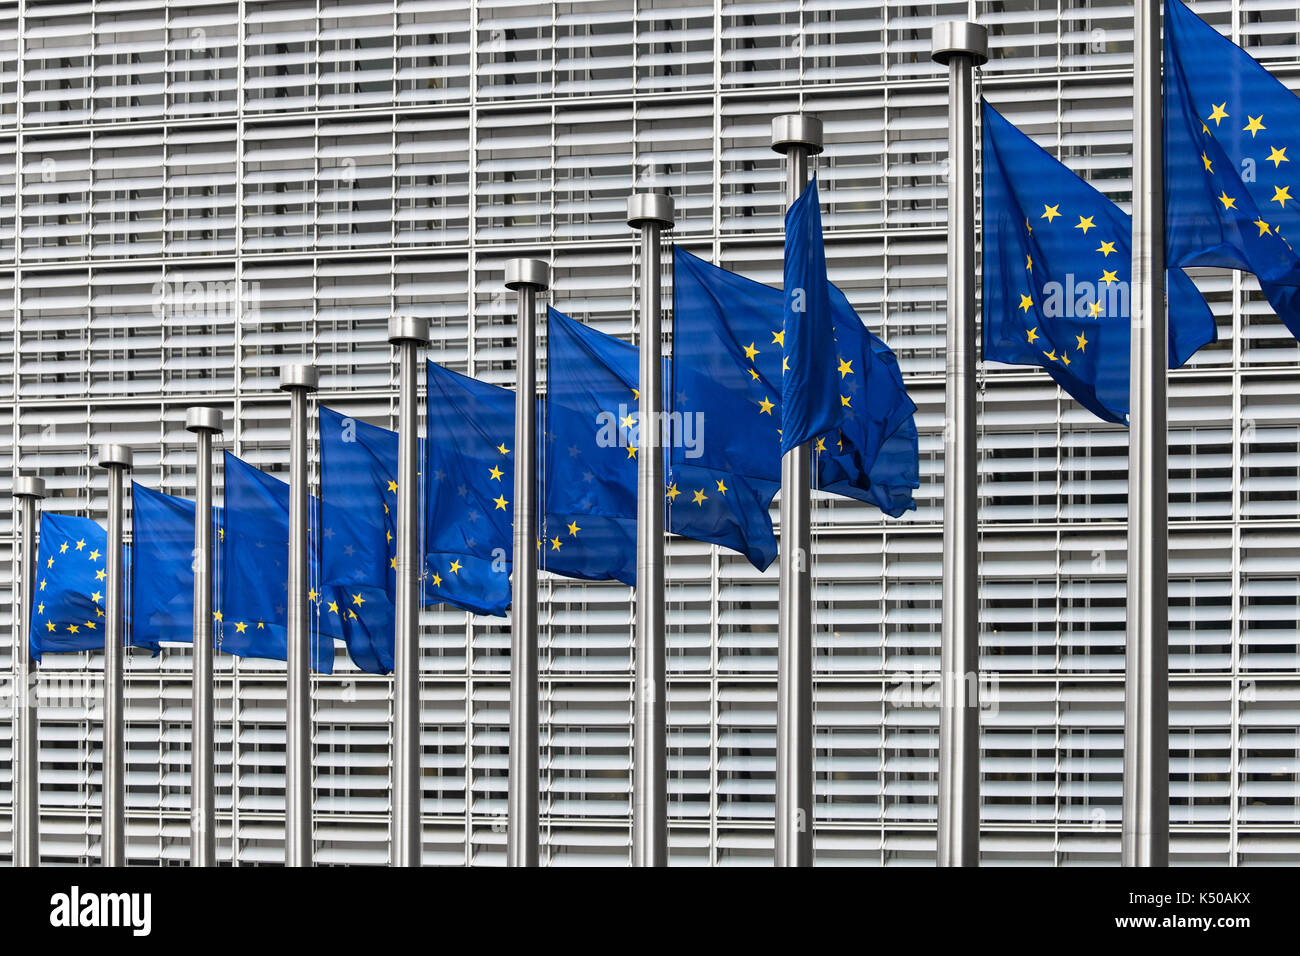 Drapeaux Européens en face de l'immeuble Berlaymont, siège de la commission européenne, Bruxelles, Belgique. Banque D'Images